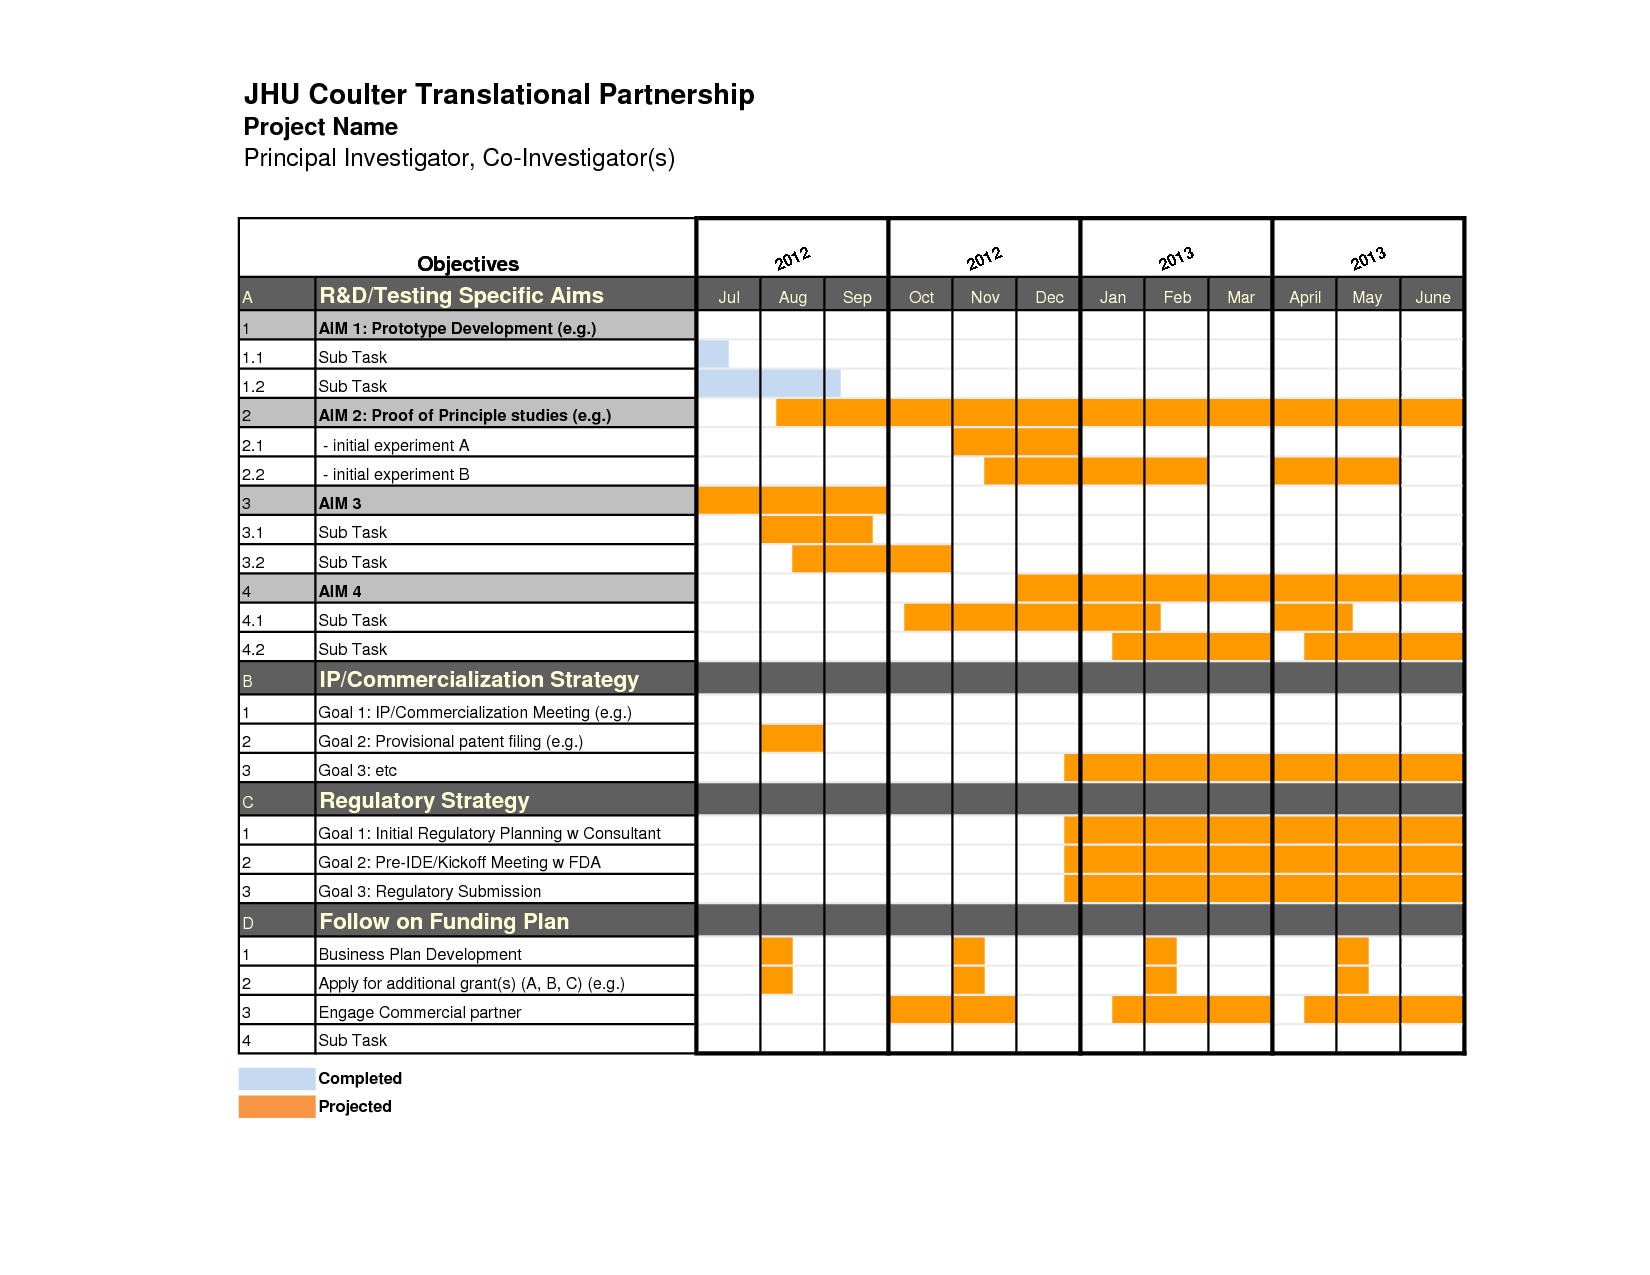 gantt-chart-timeline-template-excel-timeline-spreadshee-gantt-chart